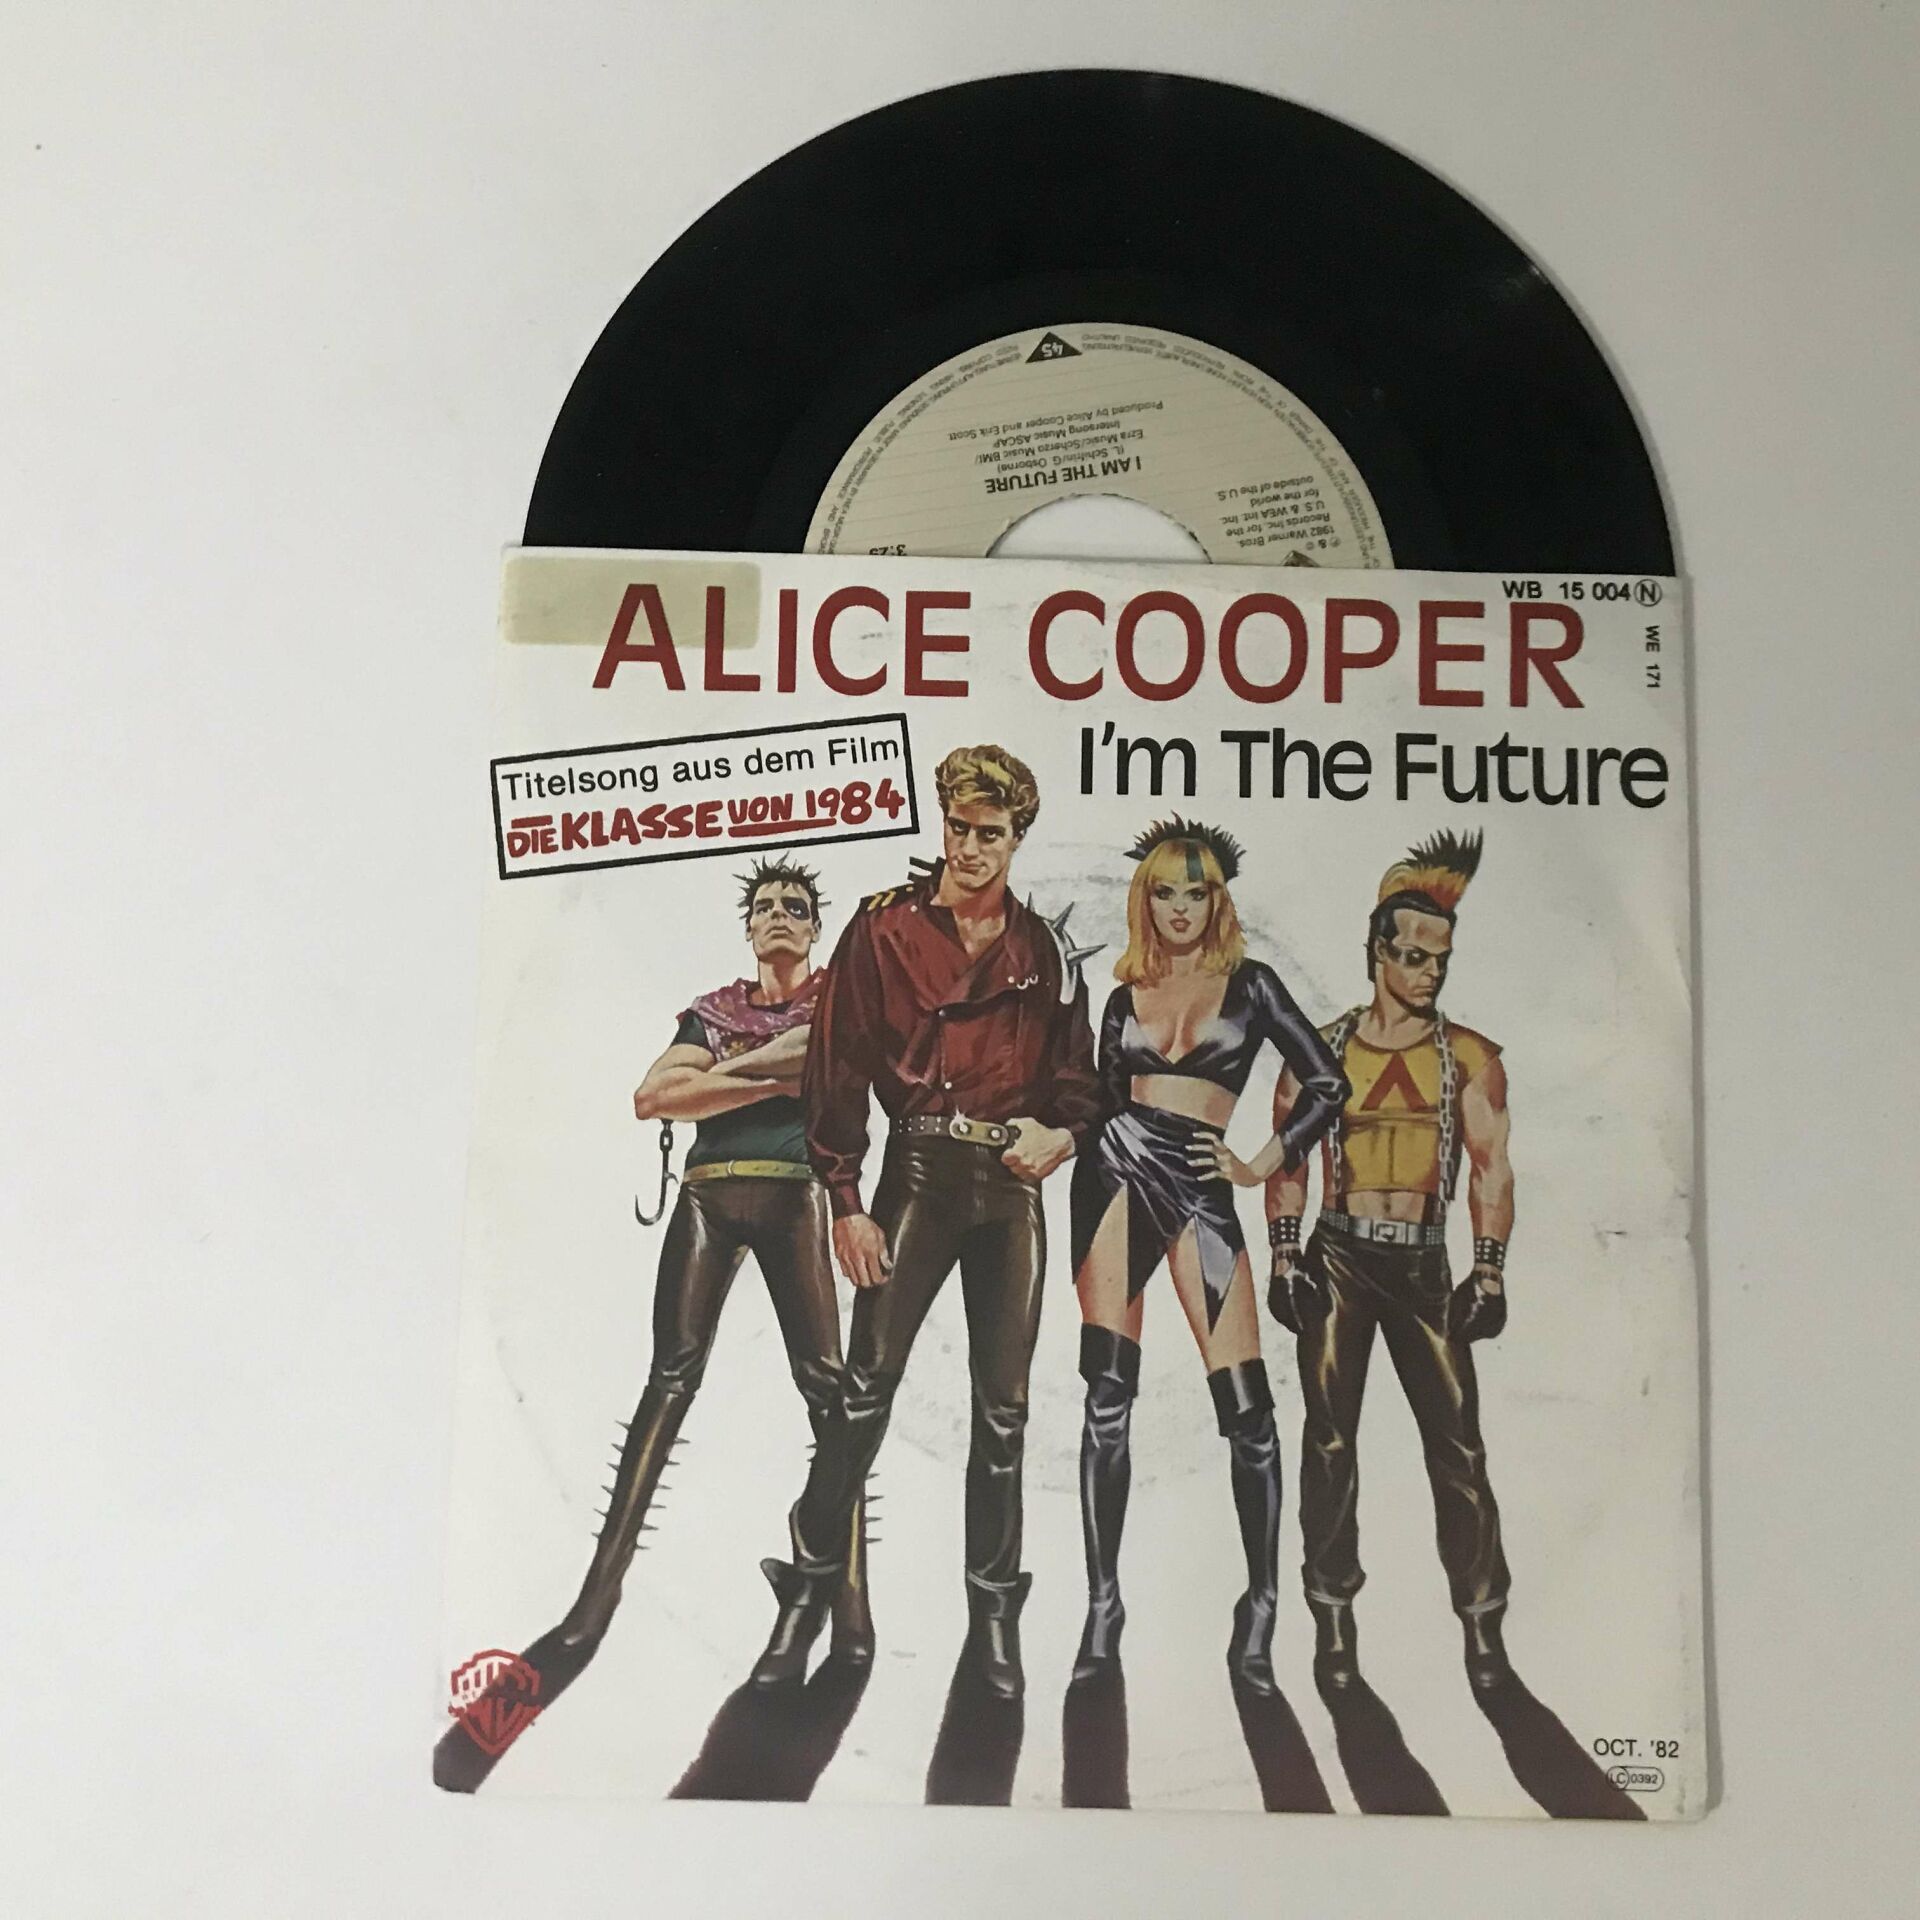 Alice Cooper – I'm The Future